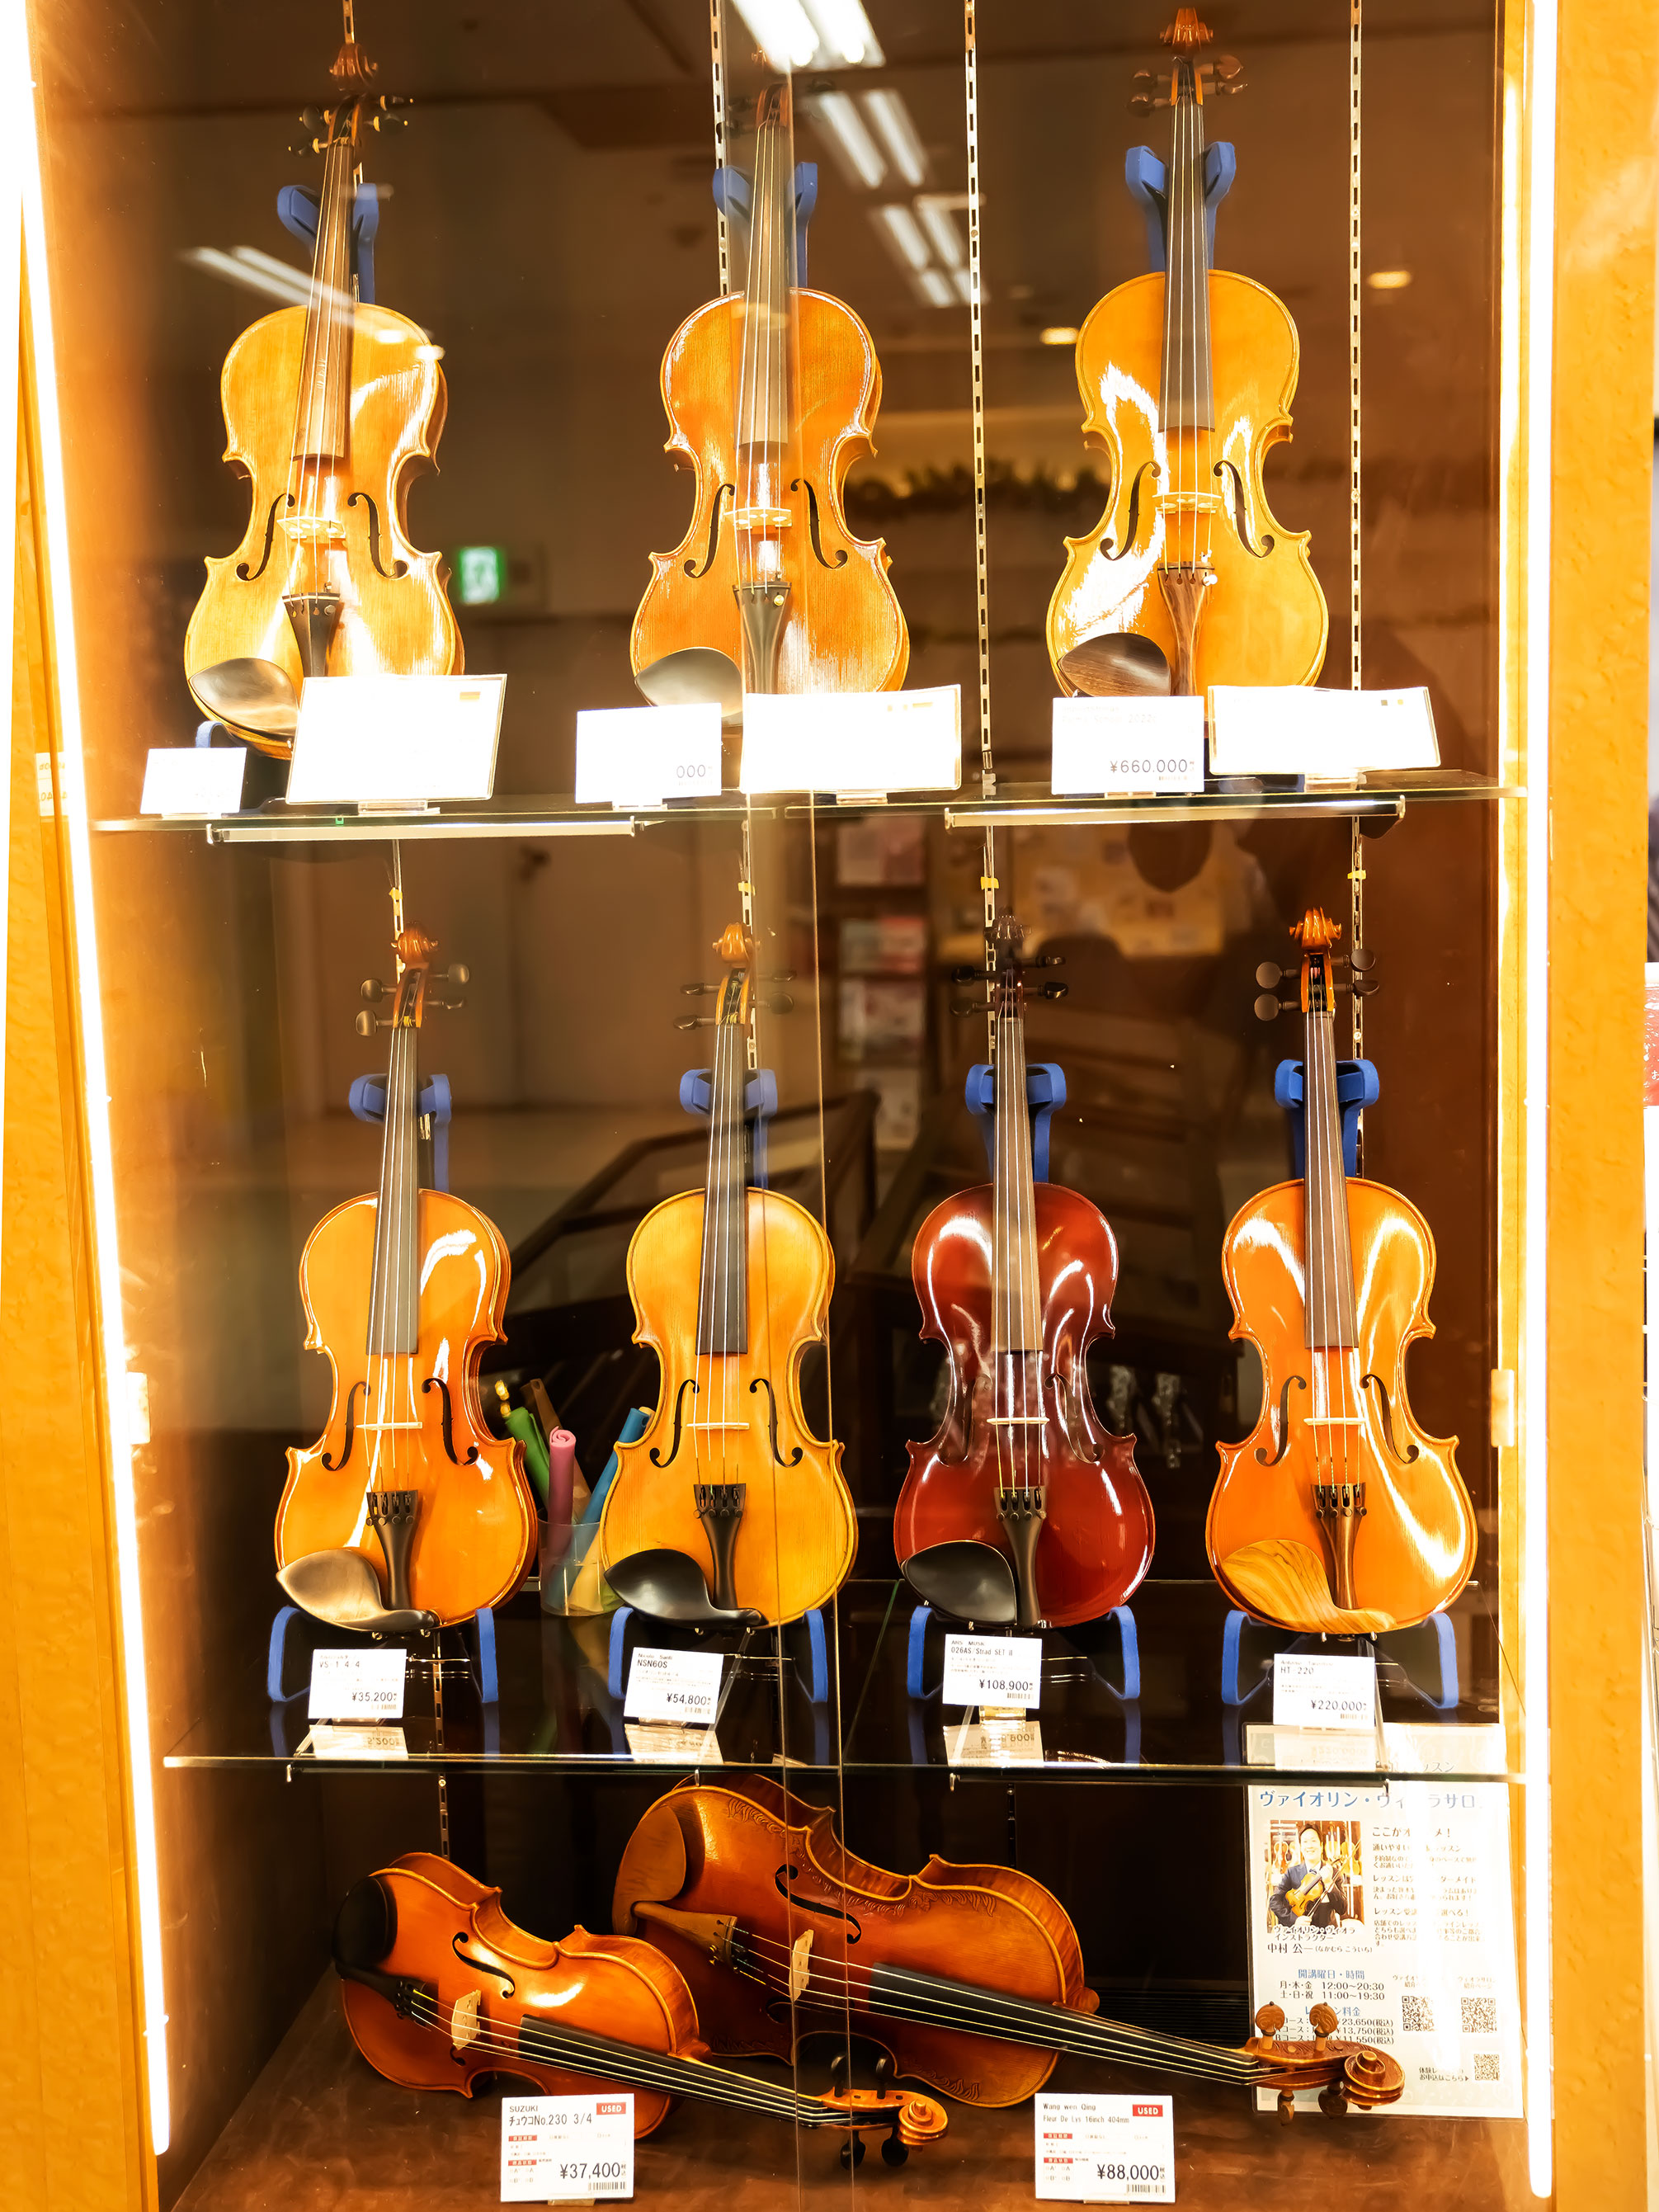 広島でバイオリン、バイオリン弓をお探しなら弦楽器上級アドバイザー常駐の島村楽器広島パルコ店にお任せください。こちらのページでは店頭展示在庫を随時更新しております。楽器の詳細、試奏のご希望等はお気軽にお問い合わせ下さい。 CONTENTSイベント情報バイオリンバイオリン弓弓の毛質をお試しいただけます弦 […]